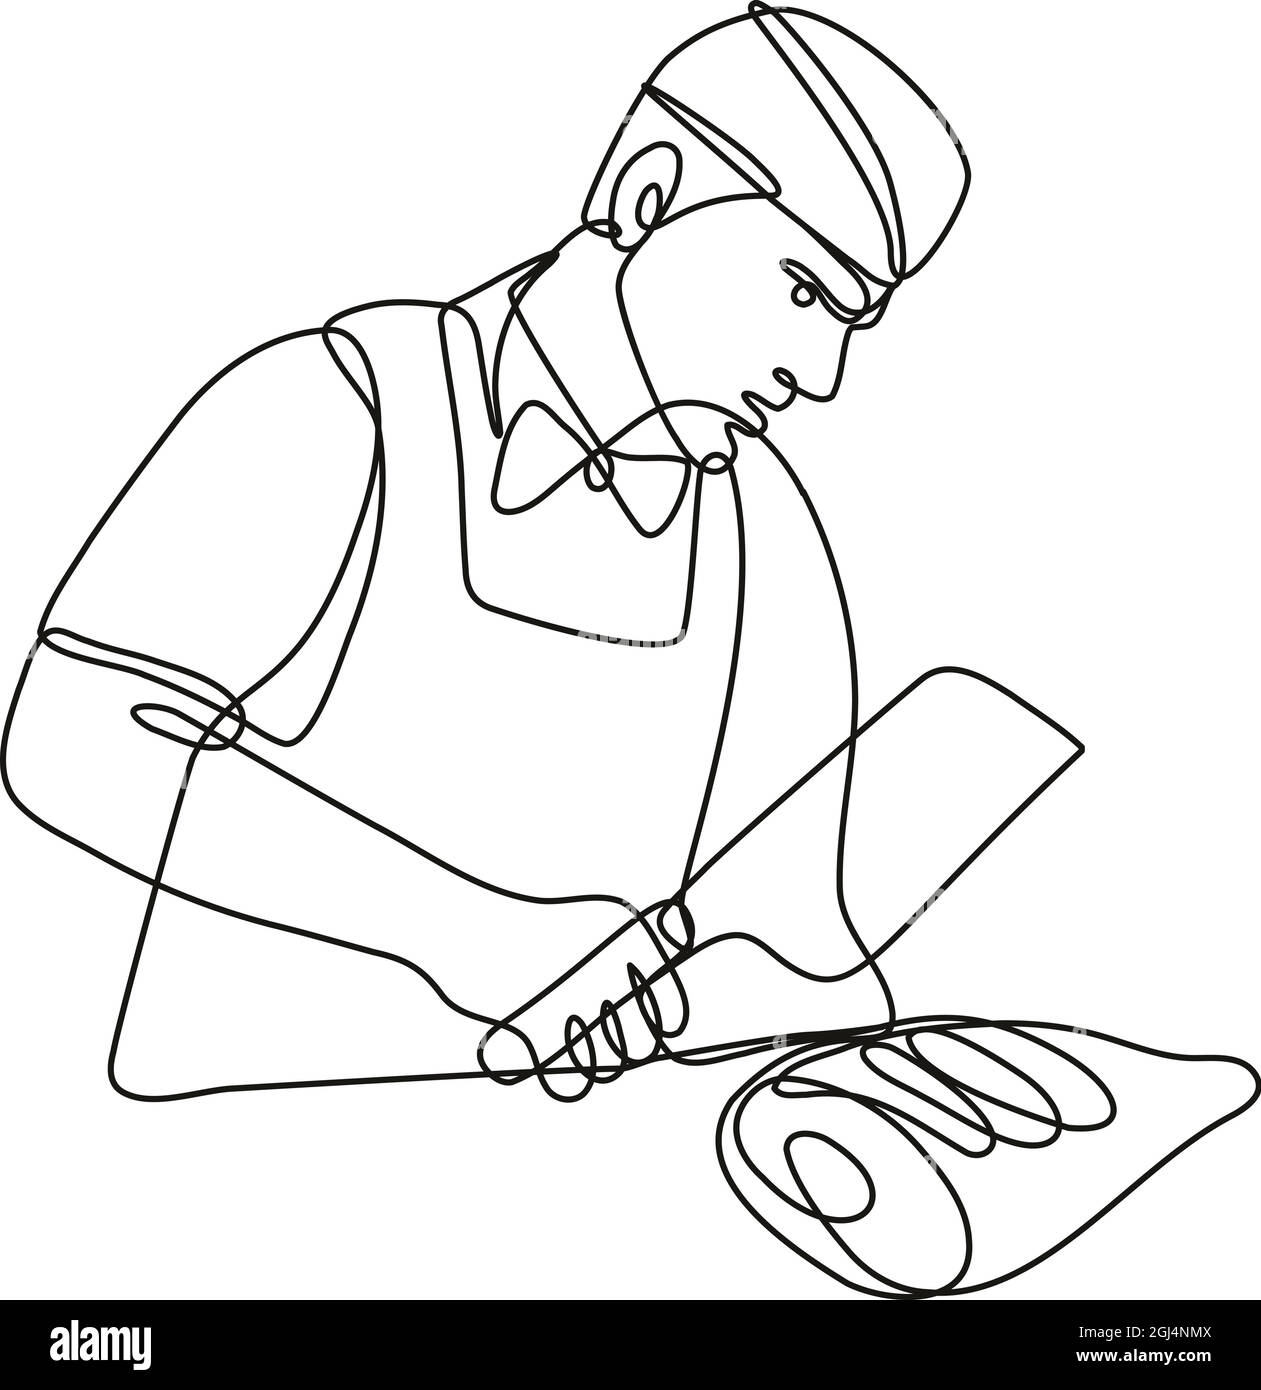 Dessin en ligne continue illustration d'une boucherie avec un cale de viande coupe le pied de jambon fait en ligne simple ou en forme de doodle en noir et blanc sur l'isolat Illustration de Vecteur